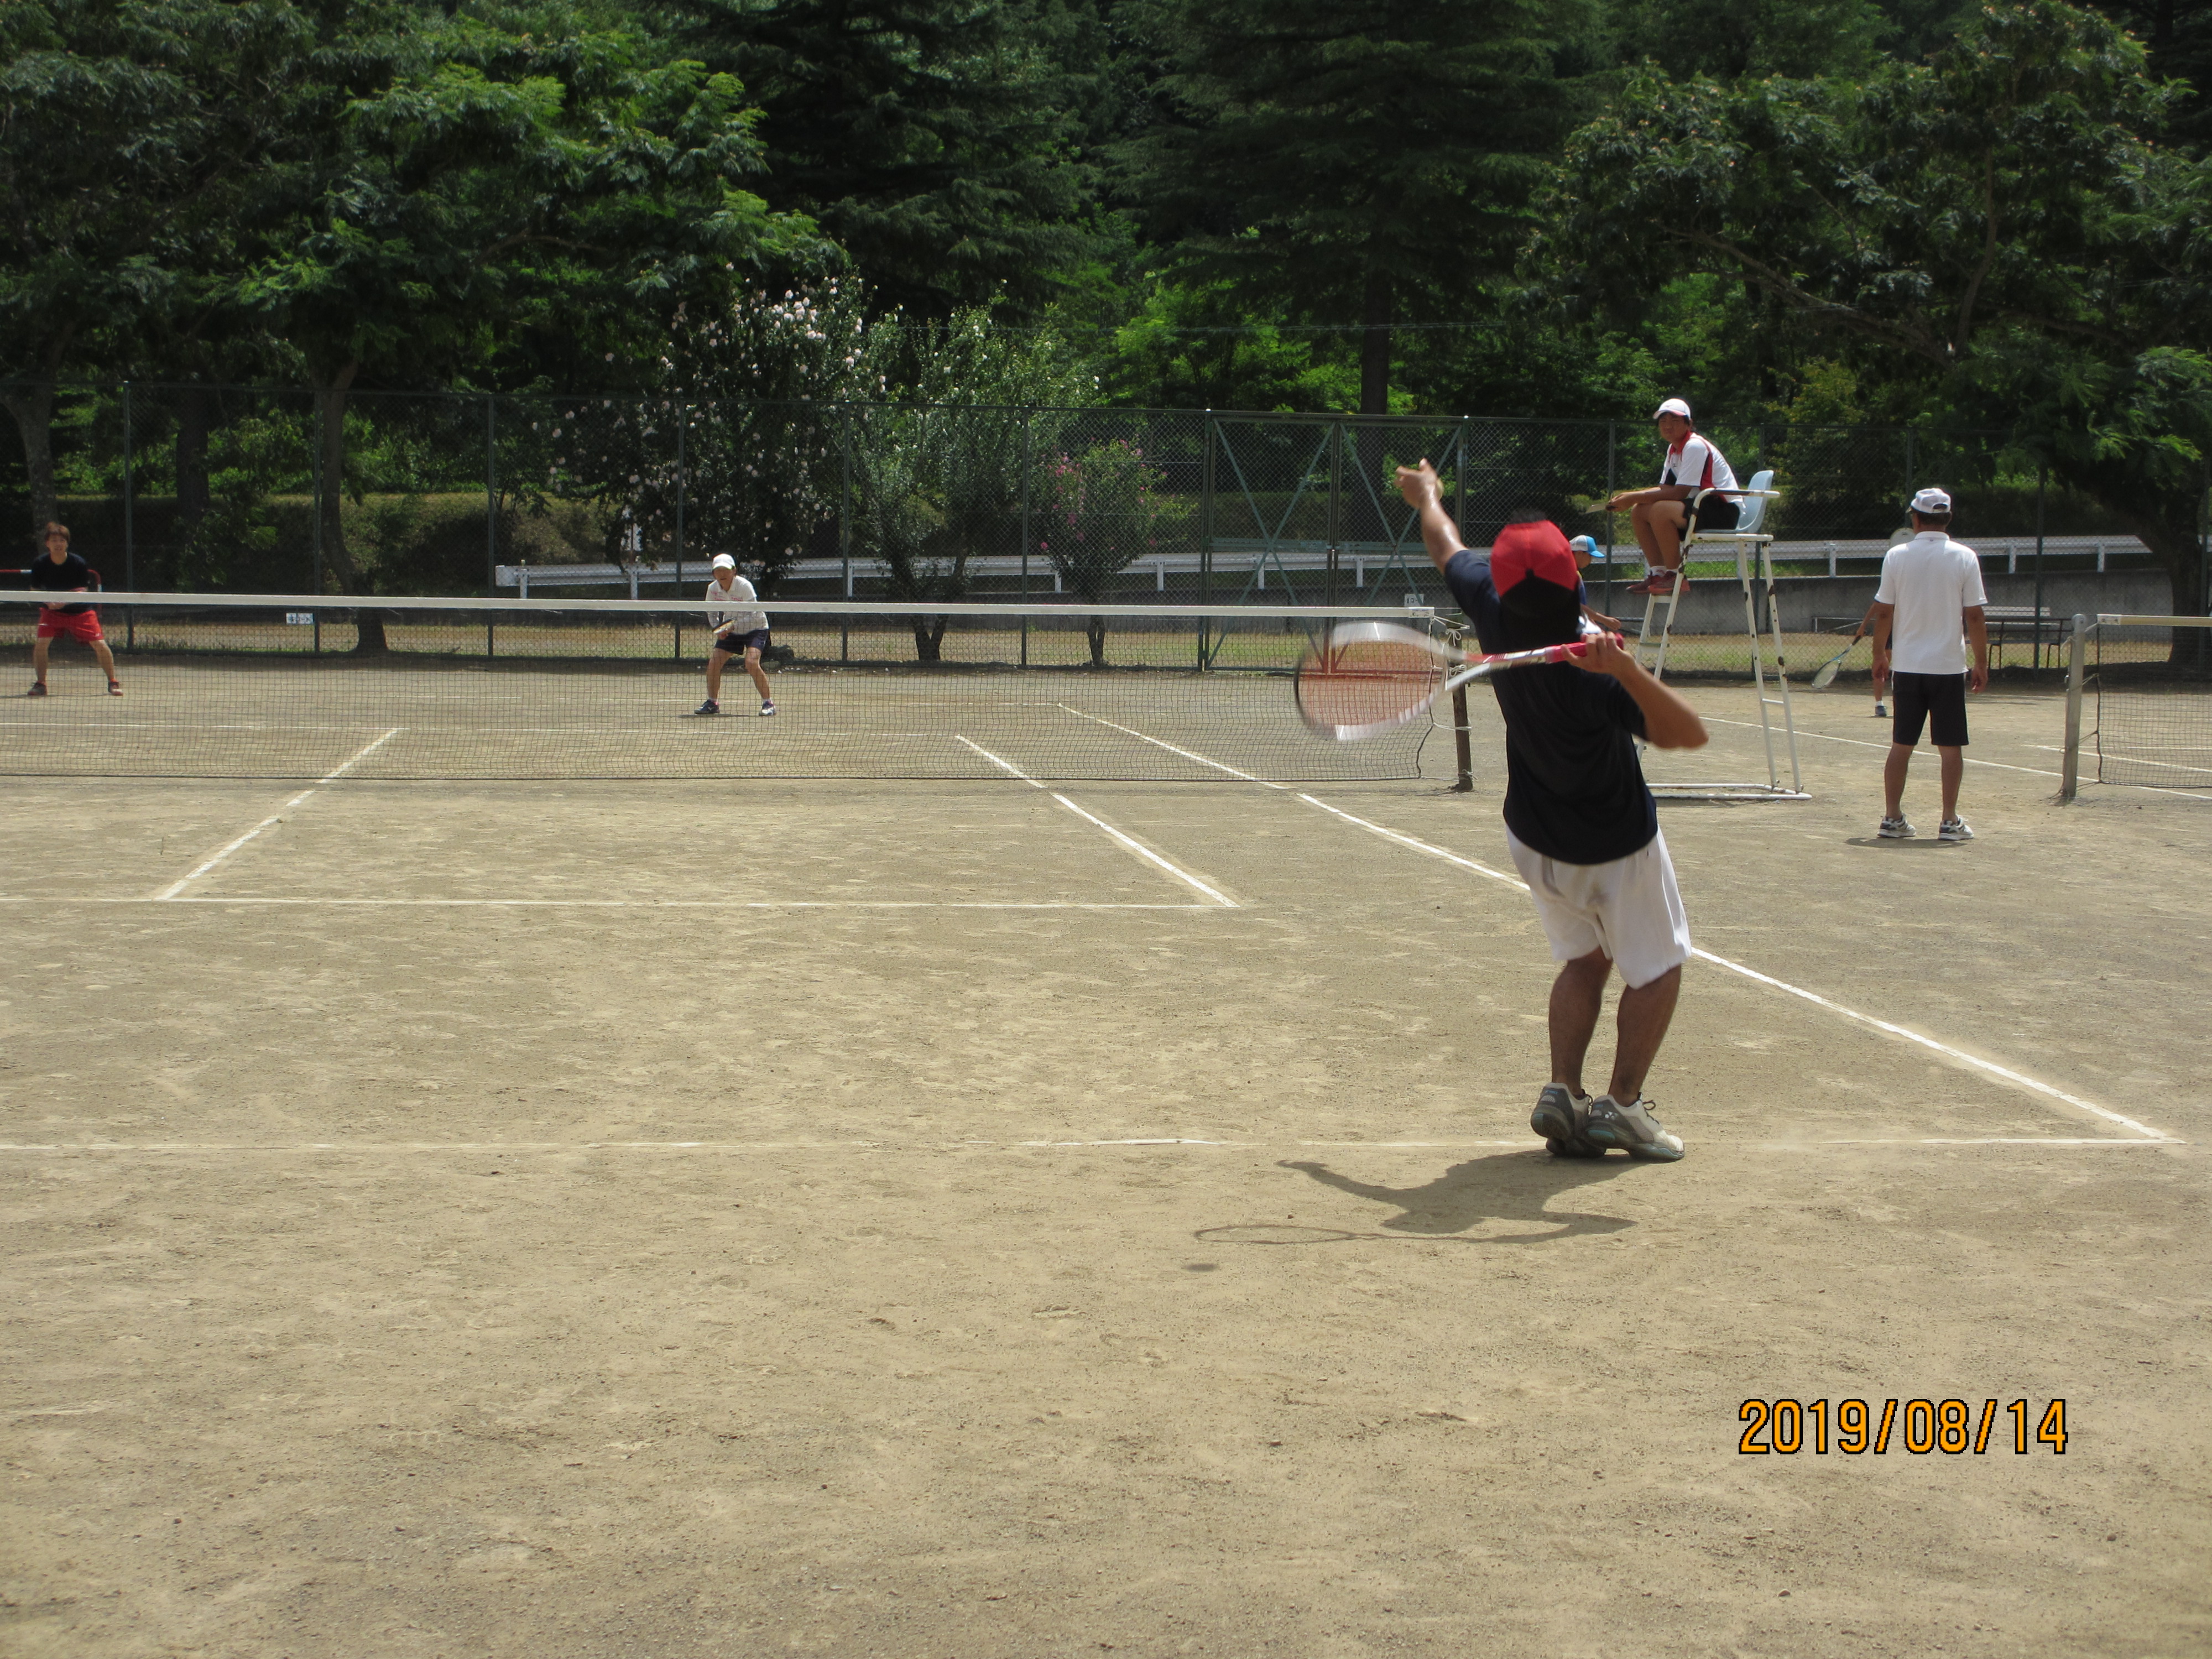 武石夏祭り親善ソフトテニス大会 結果 武石スポーツ協会 みんなで楽しく 健康的に 親しもう ともしびの里駅伝